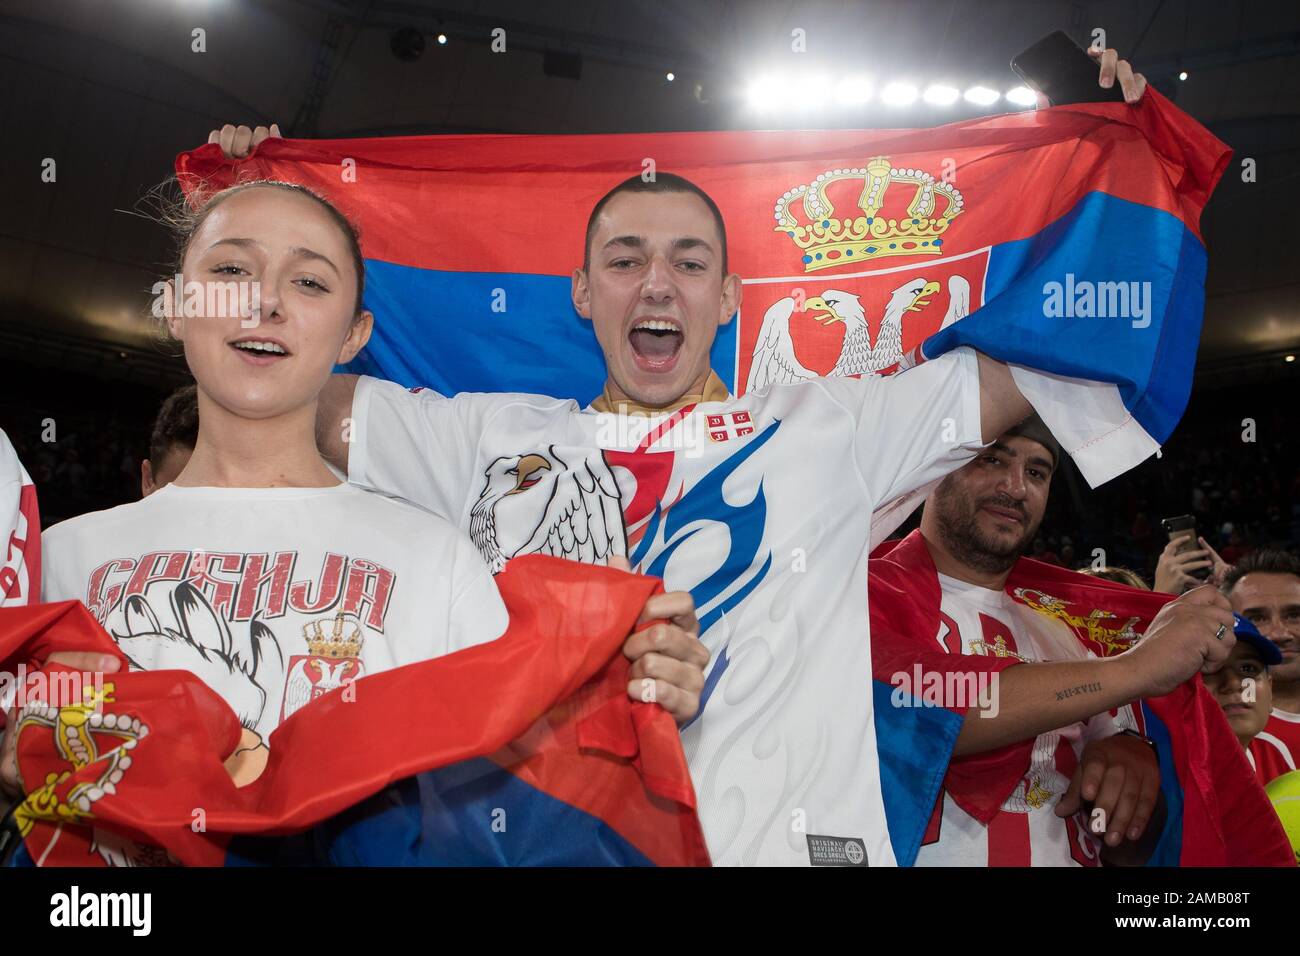 Les fans célèbrent après que la Serbie a remporté la coupe 2-1 contre l'Espagne lors de la finale de la coupe ATP 2020 à la Ken Rosewall Arena, à Sydney, en Australie, le 12 janvier 2020. Photo De Peter Dovgan. Banque D'Images